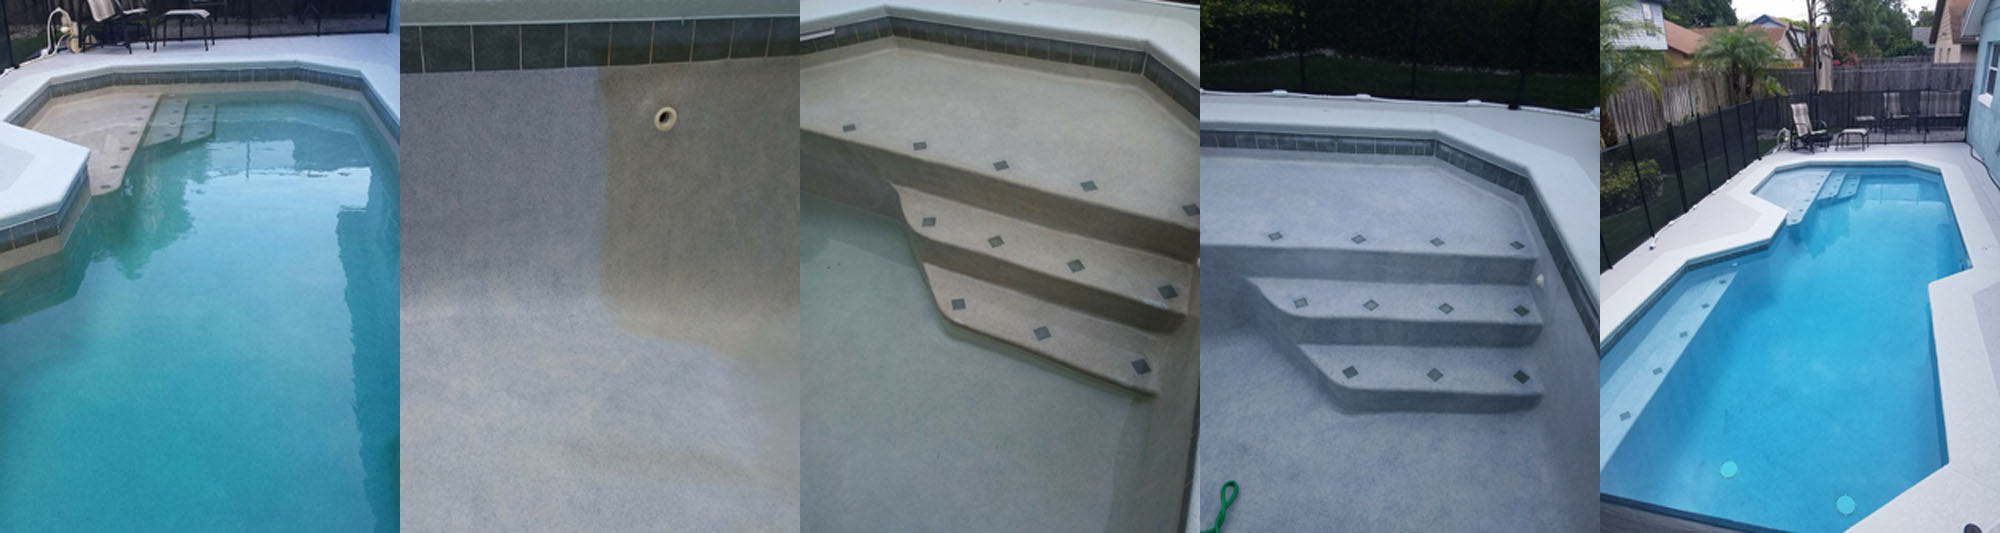 Inground Pool Acid Wash Aquatek Pool Care Repair